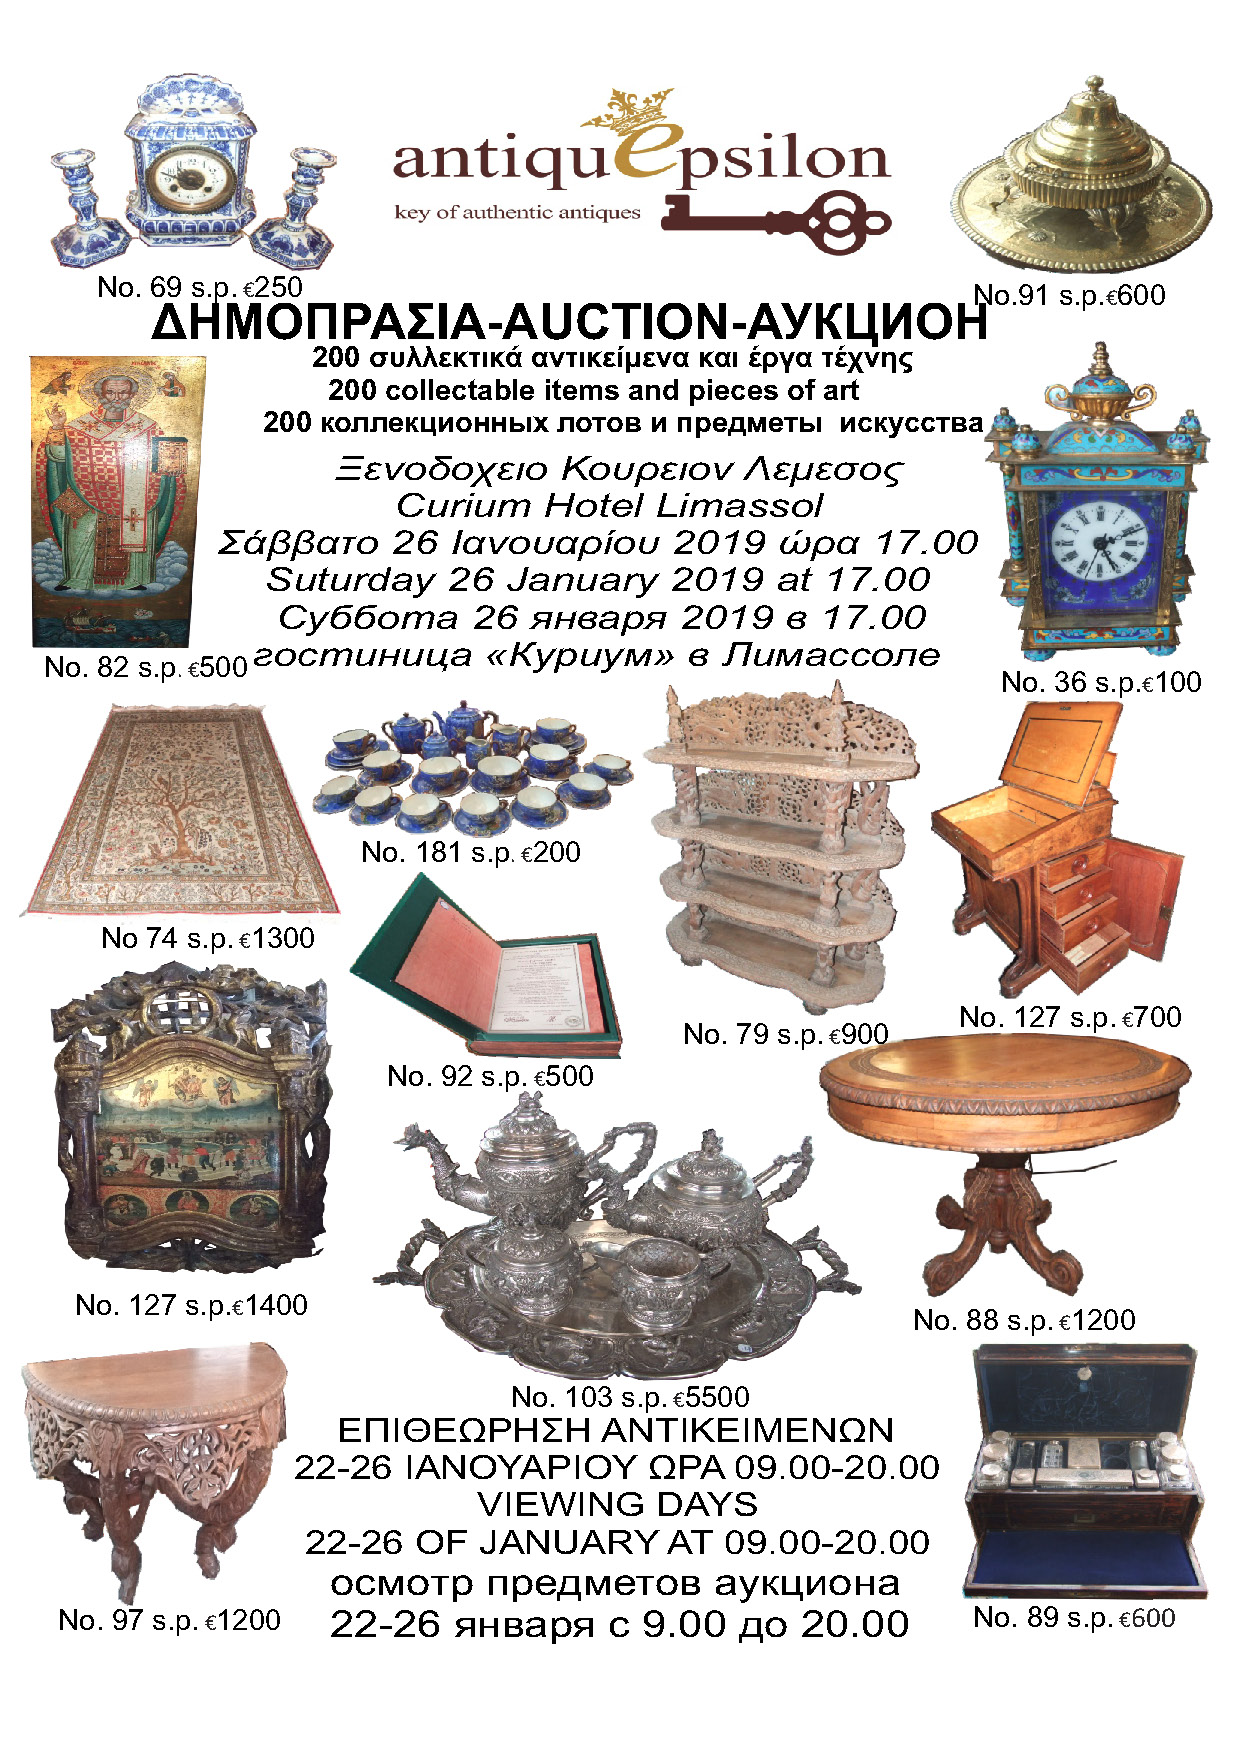 Аукцион в отеле Curium - Вестник Кипра